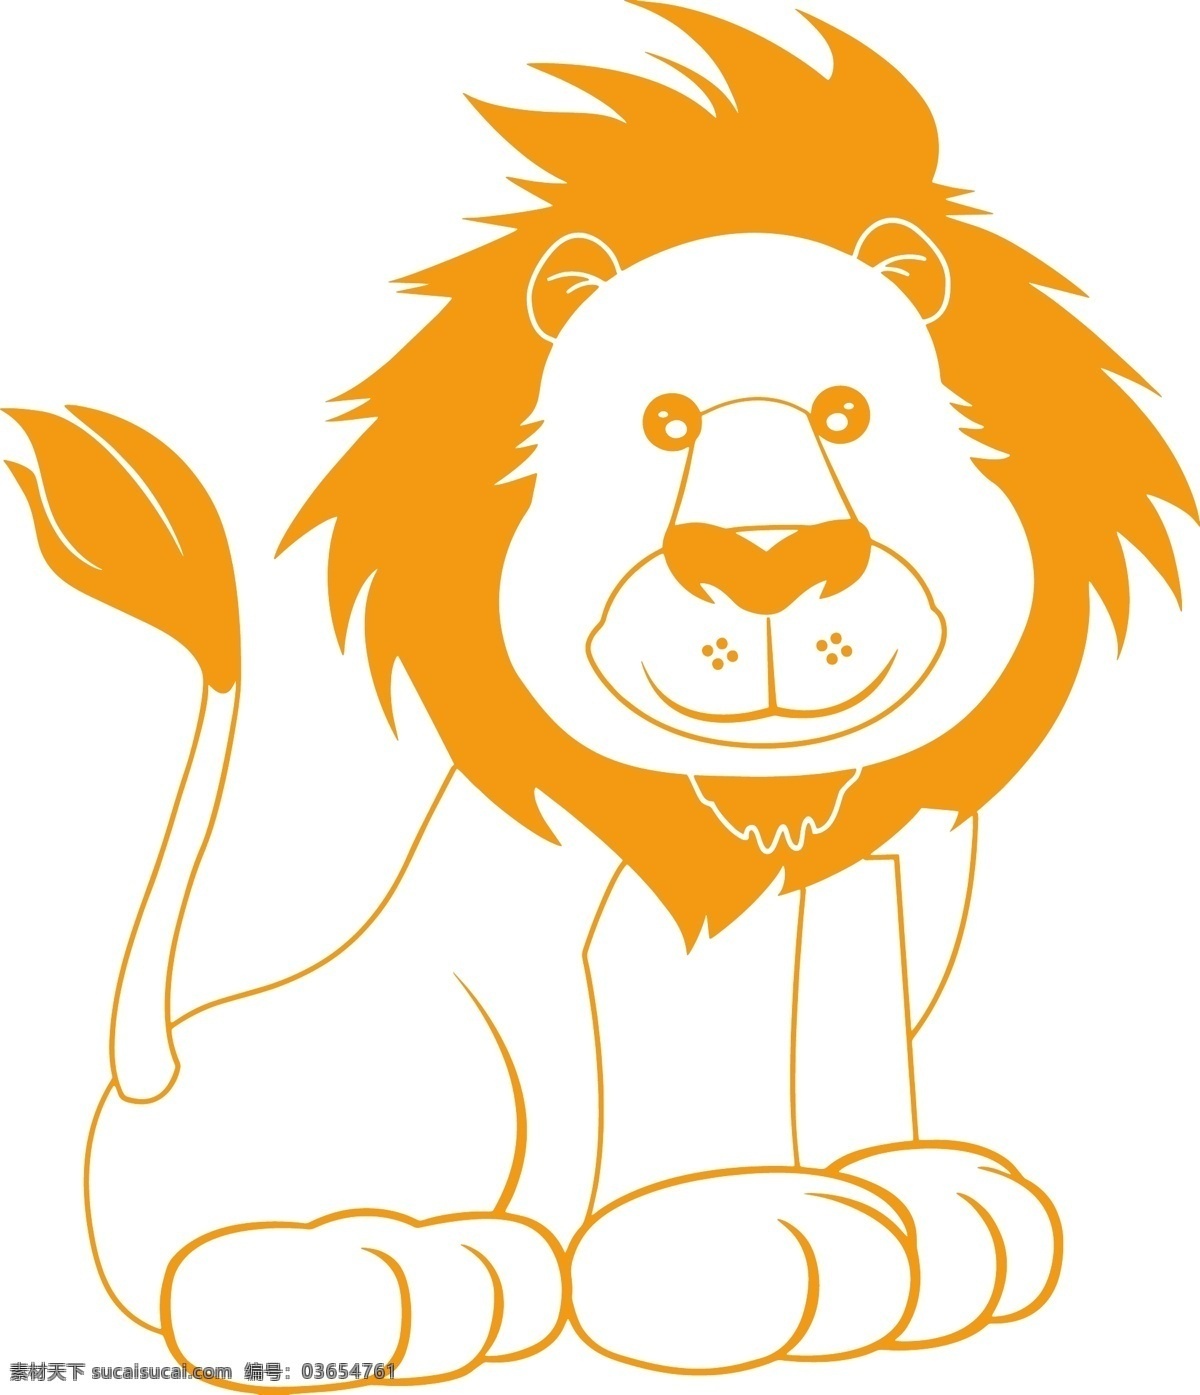 狮子 小狮子 狮子王 卡通狮子 卡通小狮子 动漫动画 动漫人物